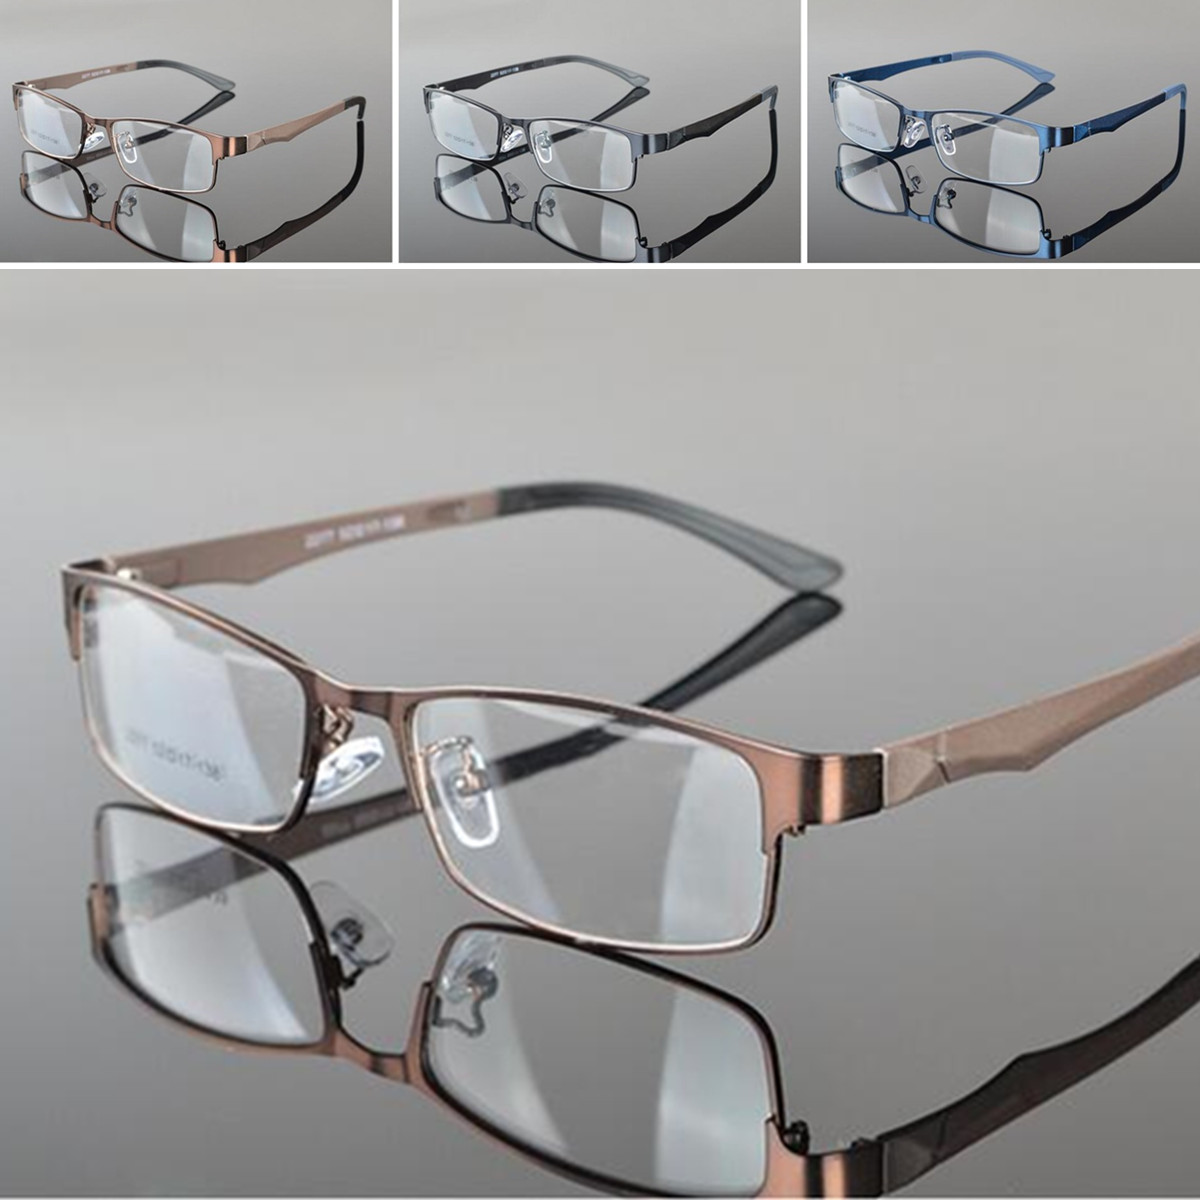 

Metal Full Rim Eyeglasses Frame Glasses Optical Rx Glasses